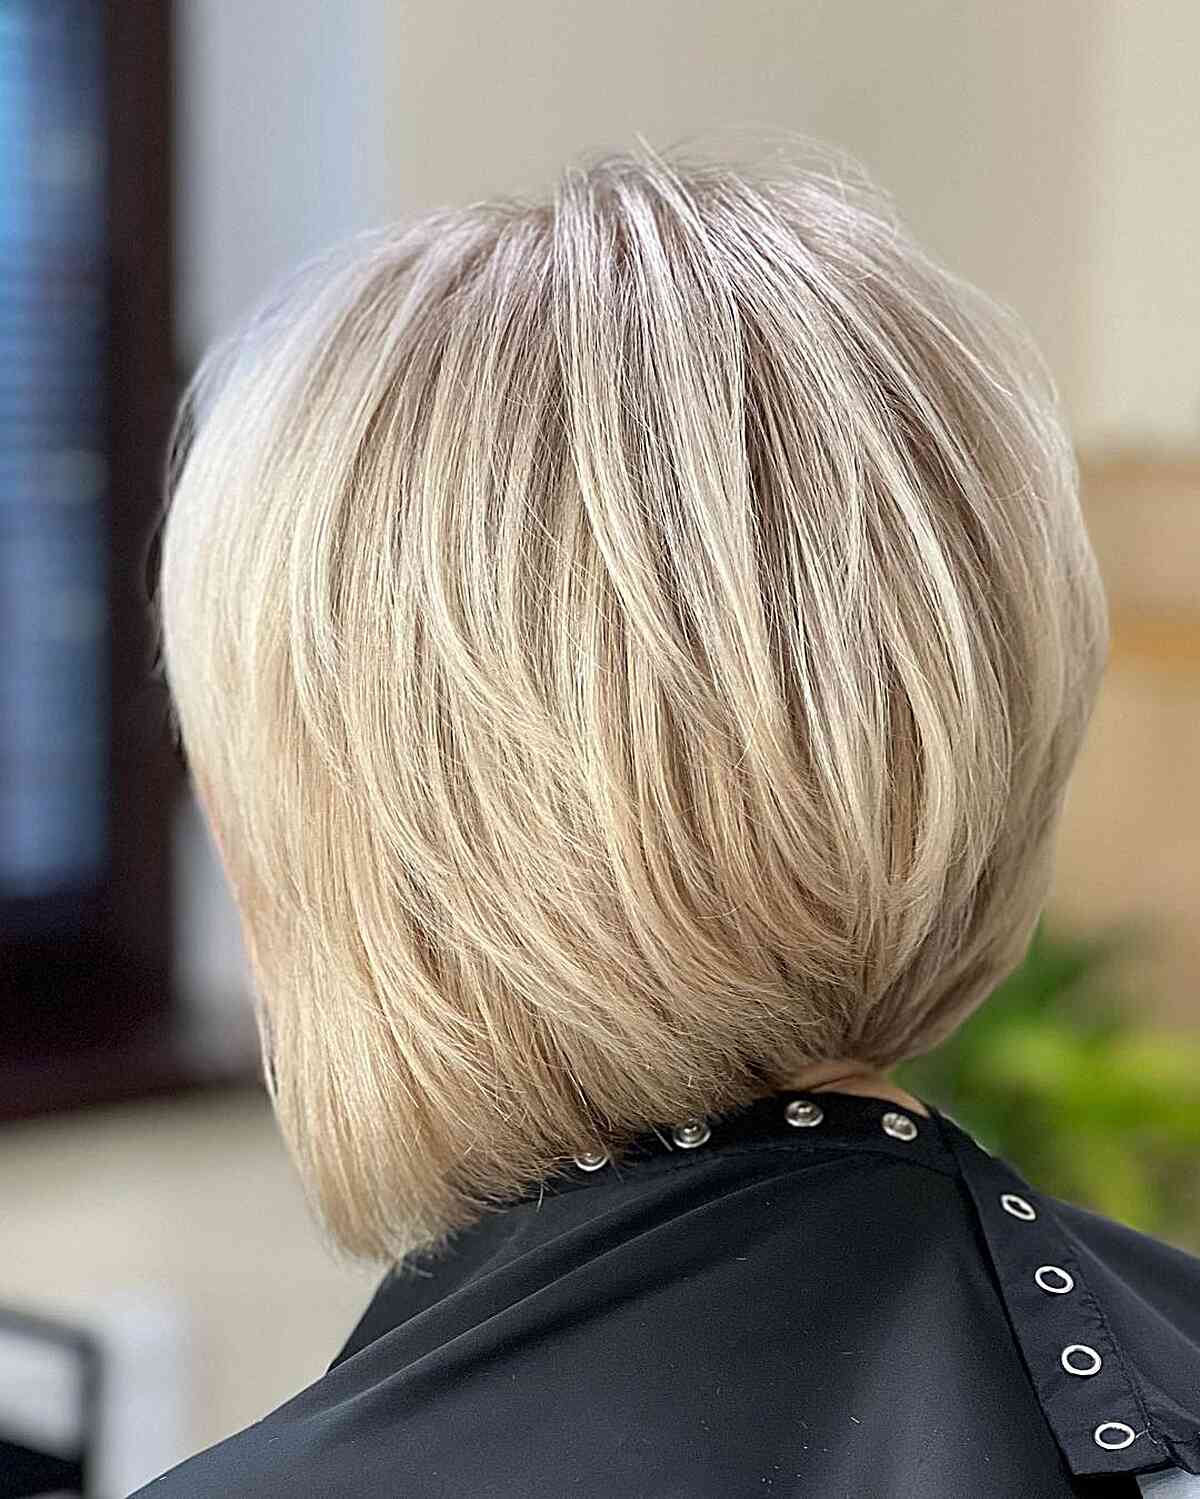 Corte de cabelo loiro com uma camada visível